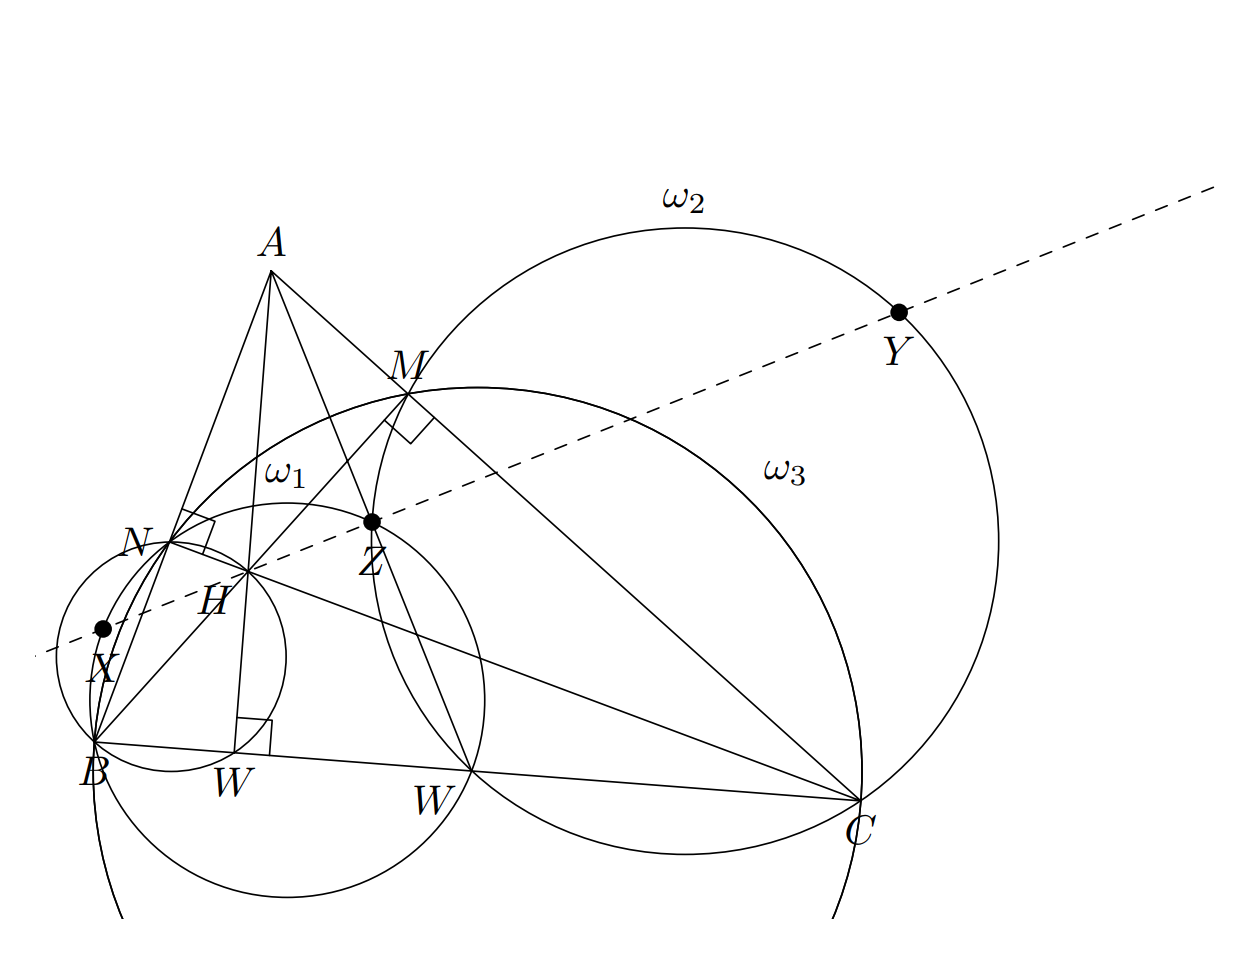 TikZ 绘制一个复杂的几何关系图